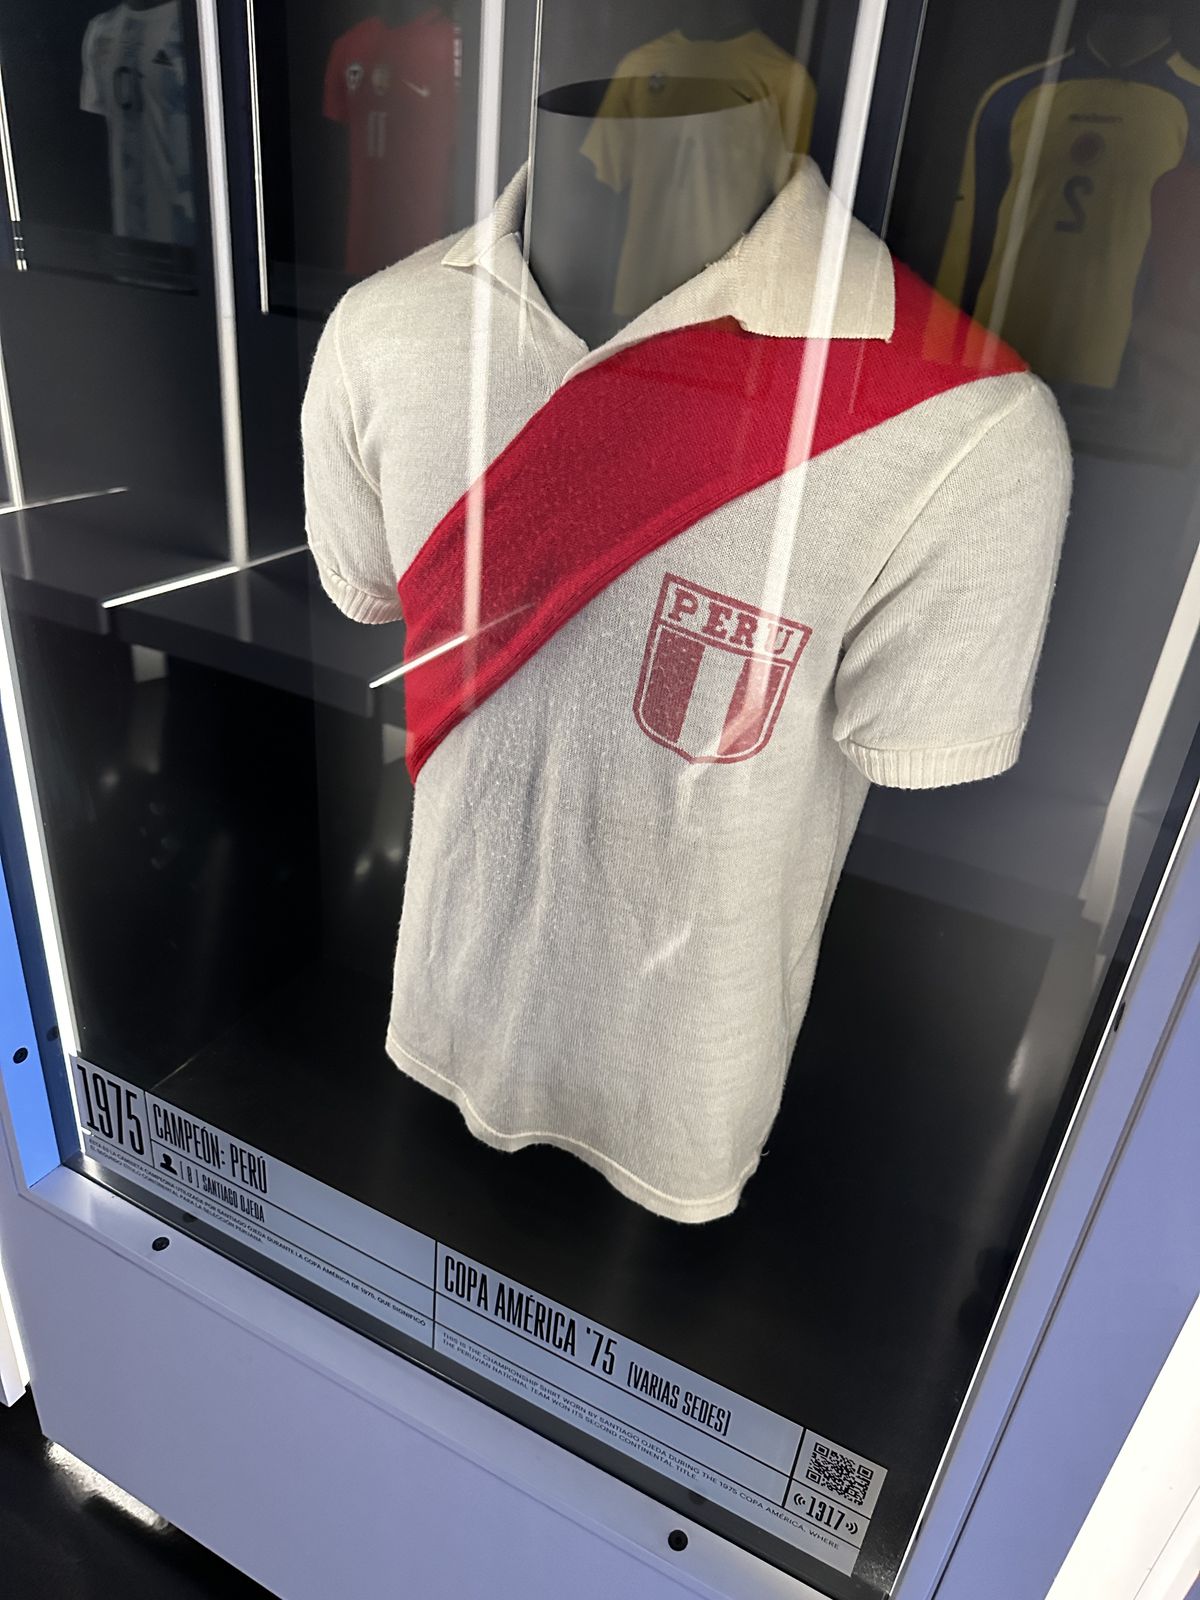 Galerie impresionantă de tricouri la muzeul fotbalului din Madrid